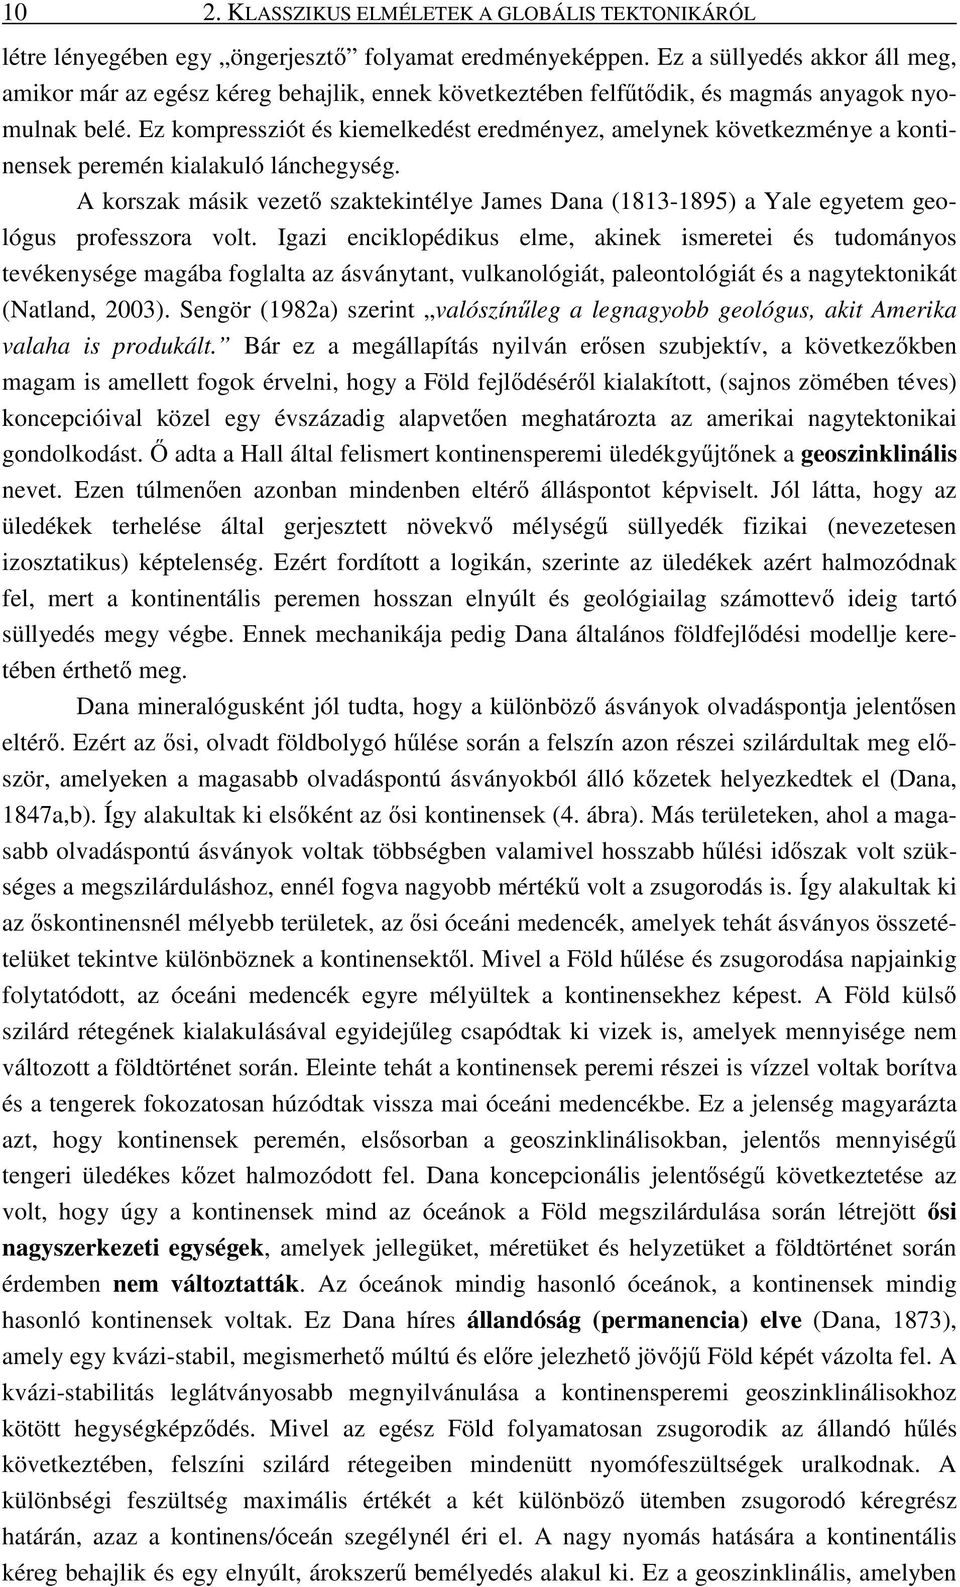 A PANNON-MEDENCE GEODINAMIKÁJA - PDF Ingyenes letöltés